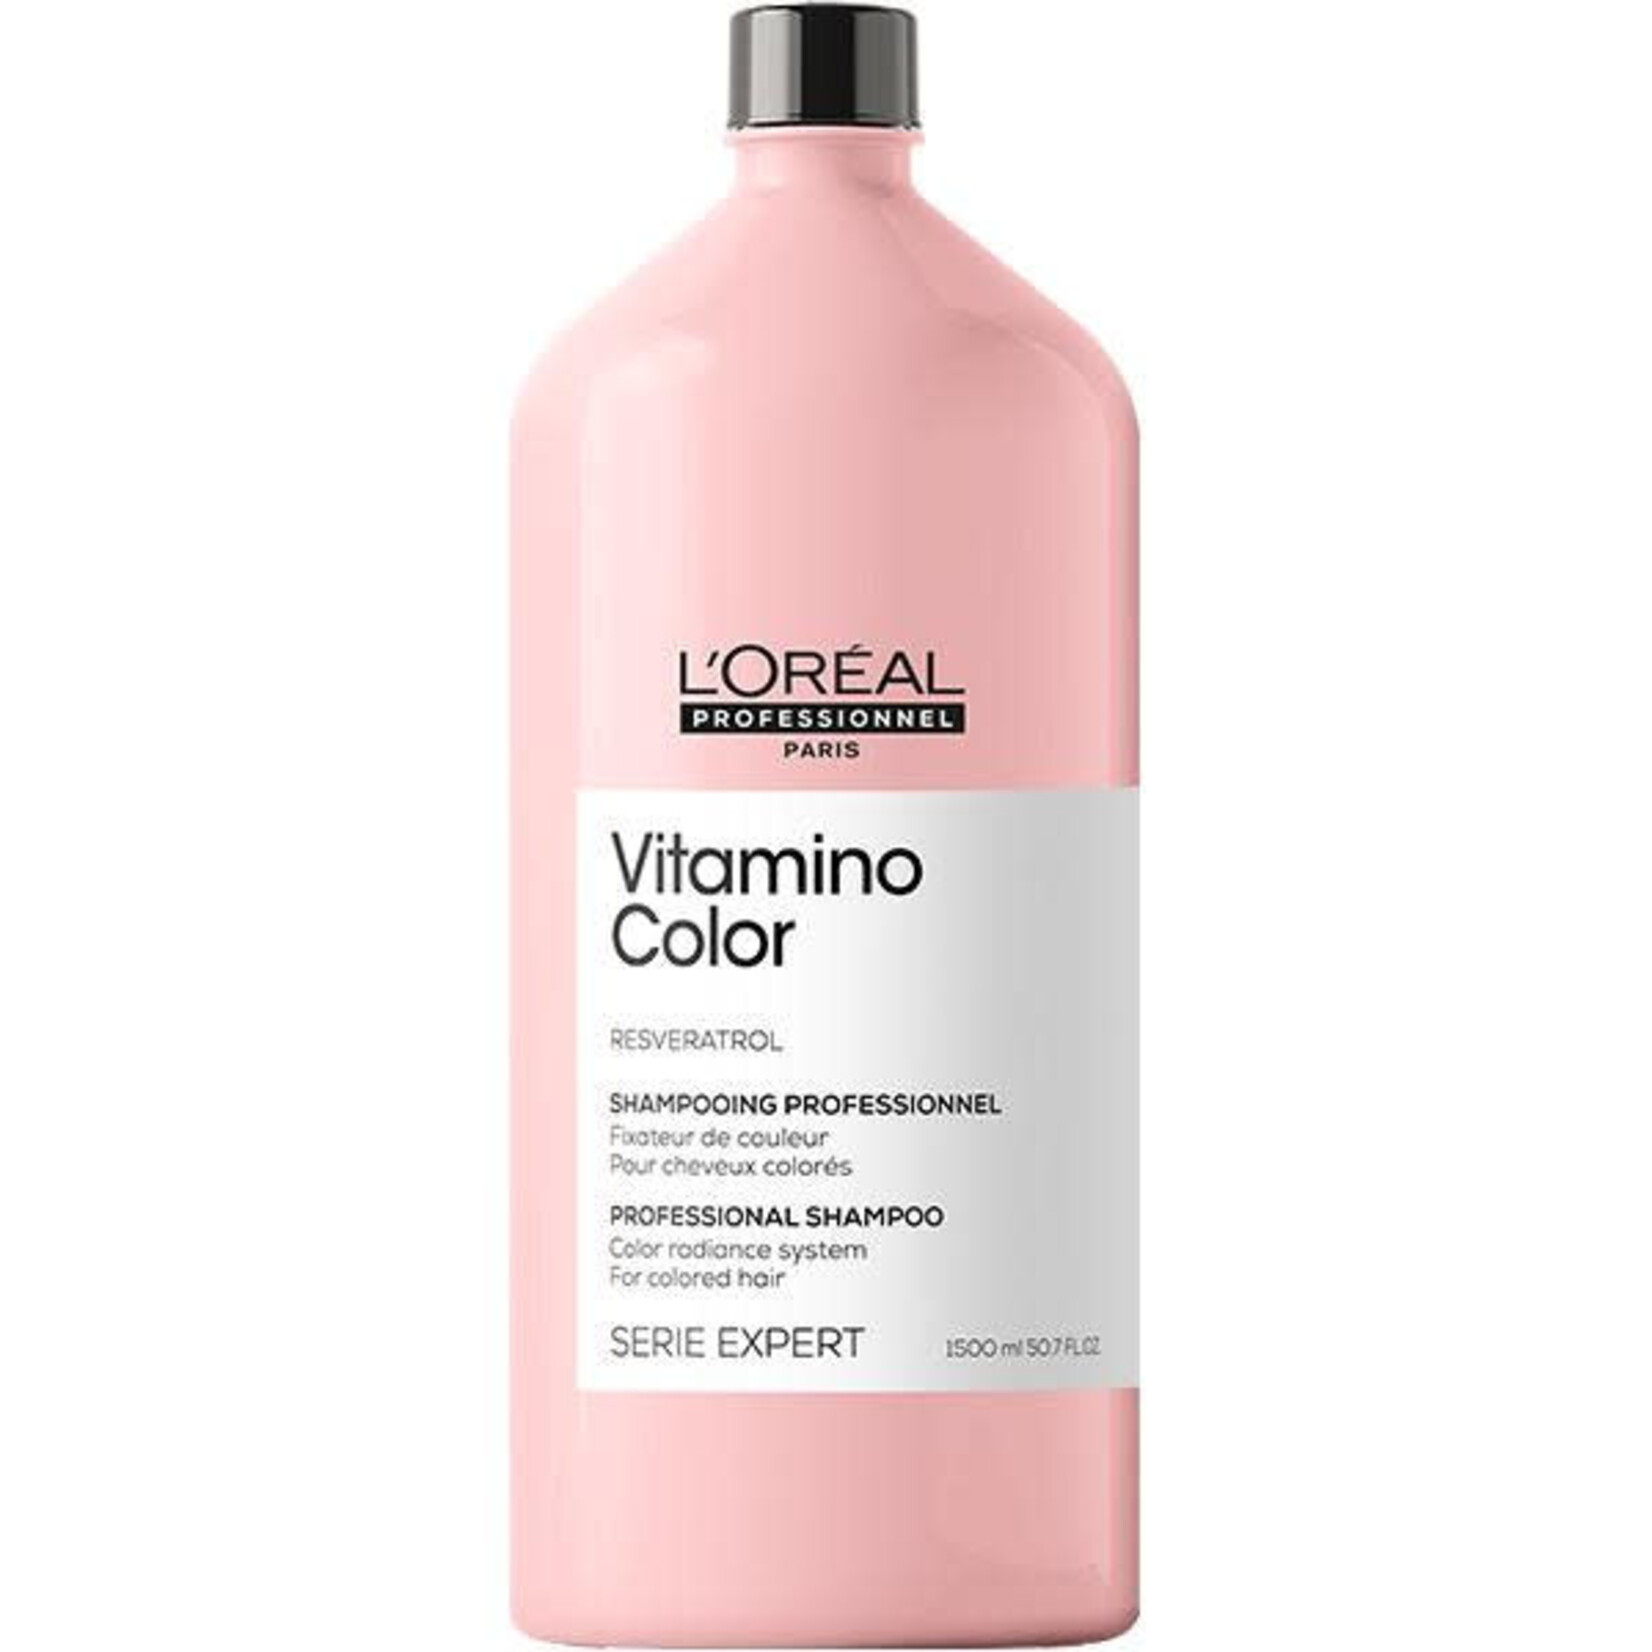 L'Oréal L'Oréal Professionnel - Vitamino Color - Shampoing Fixateur & Perfecteur De Couleur 1500ml